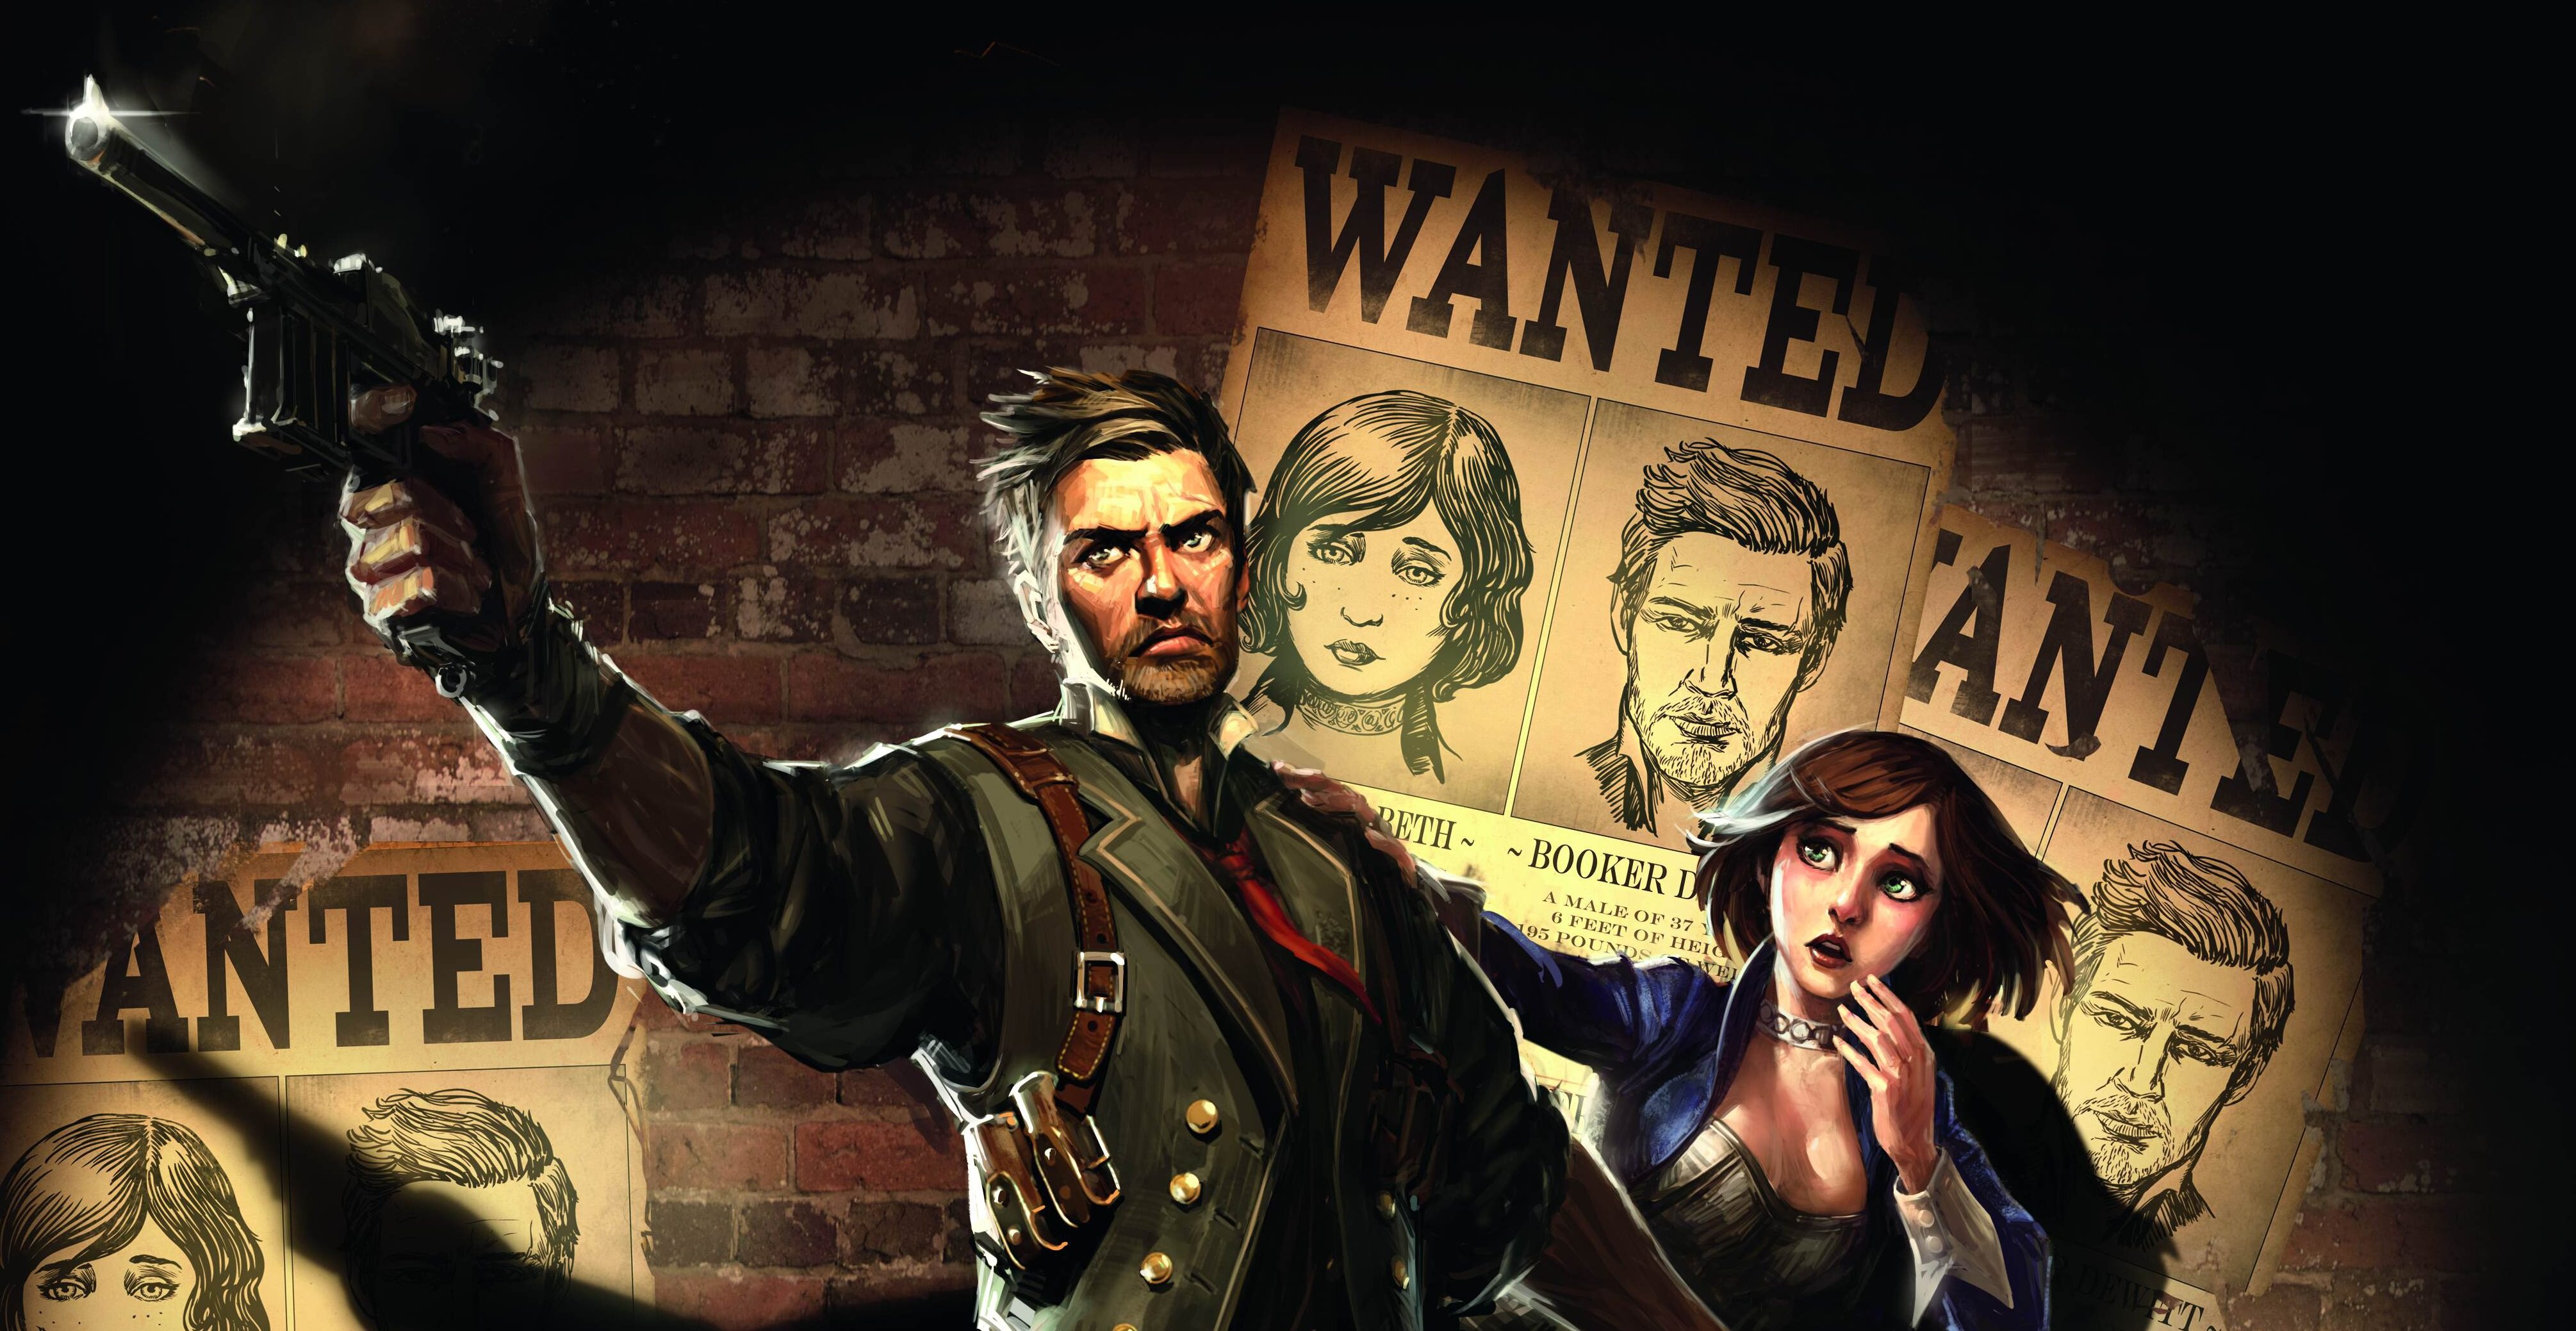 Steam Workshop::The World of BioShock Infinite